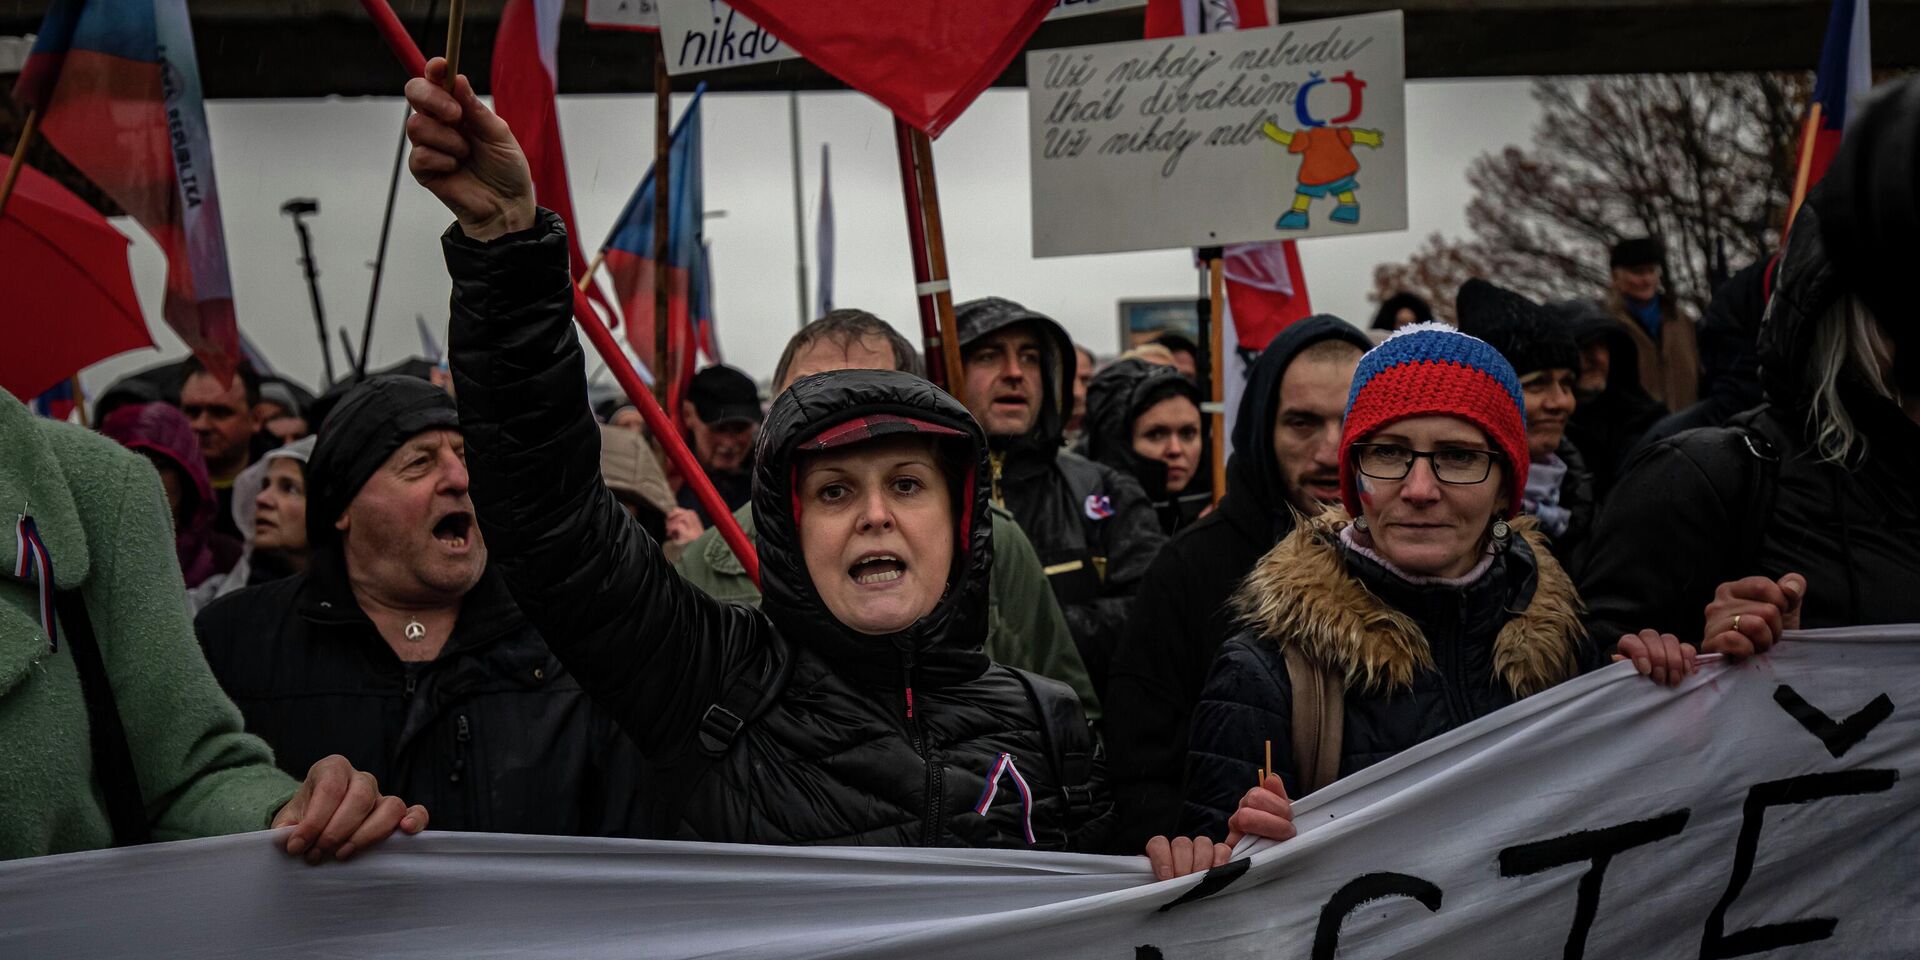 Антиправительственный протест в Праге, Чехия. 17 ноября 2022 года - ИноСМИ, 1920, 22.11.2022